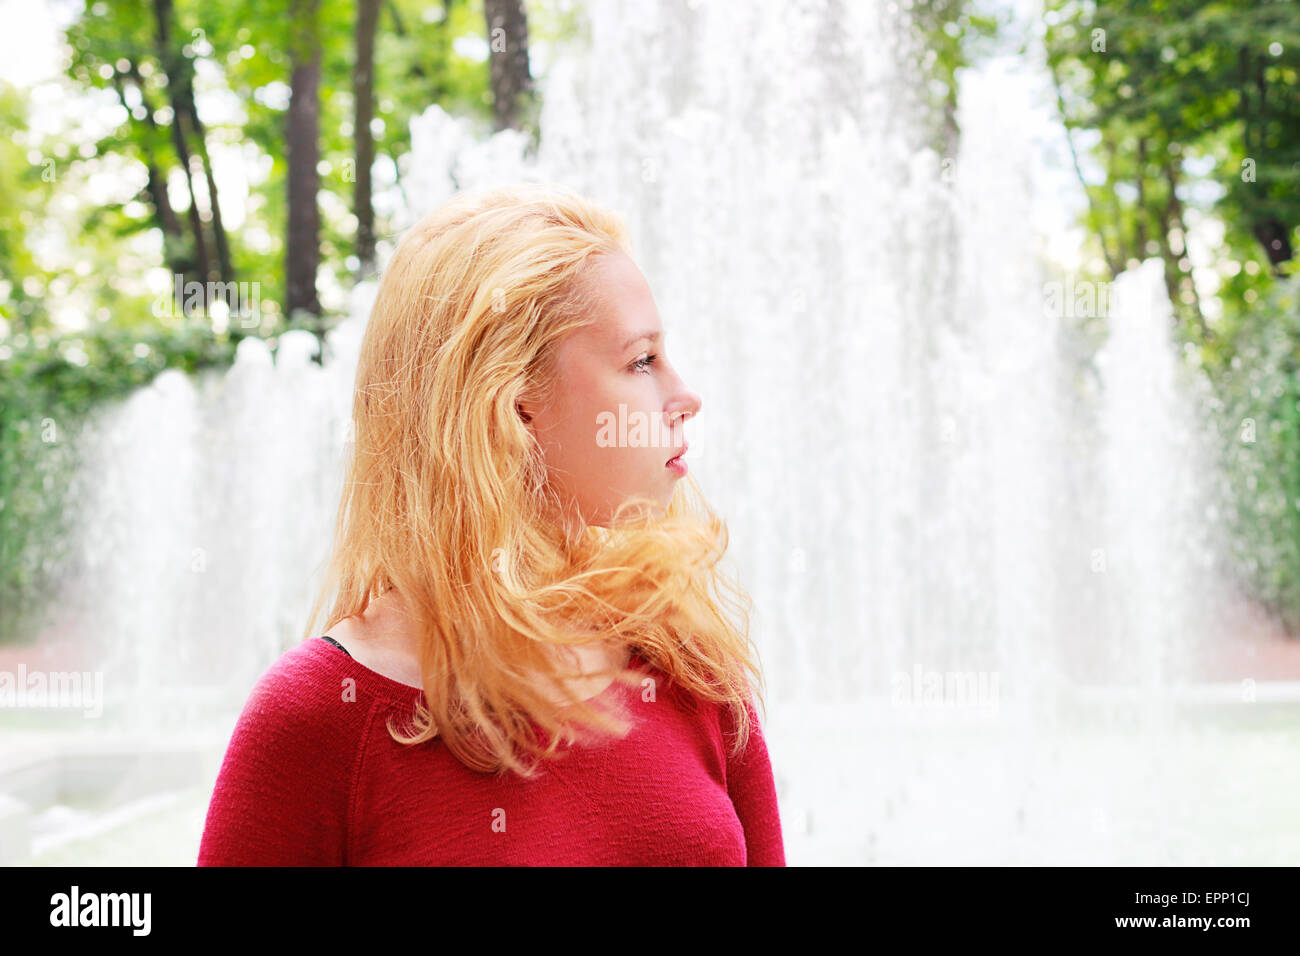 Une jeune fille aux longs cheveux blonds sur un arrière-plan d'une fontaine Banque D'Images